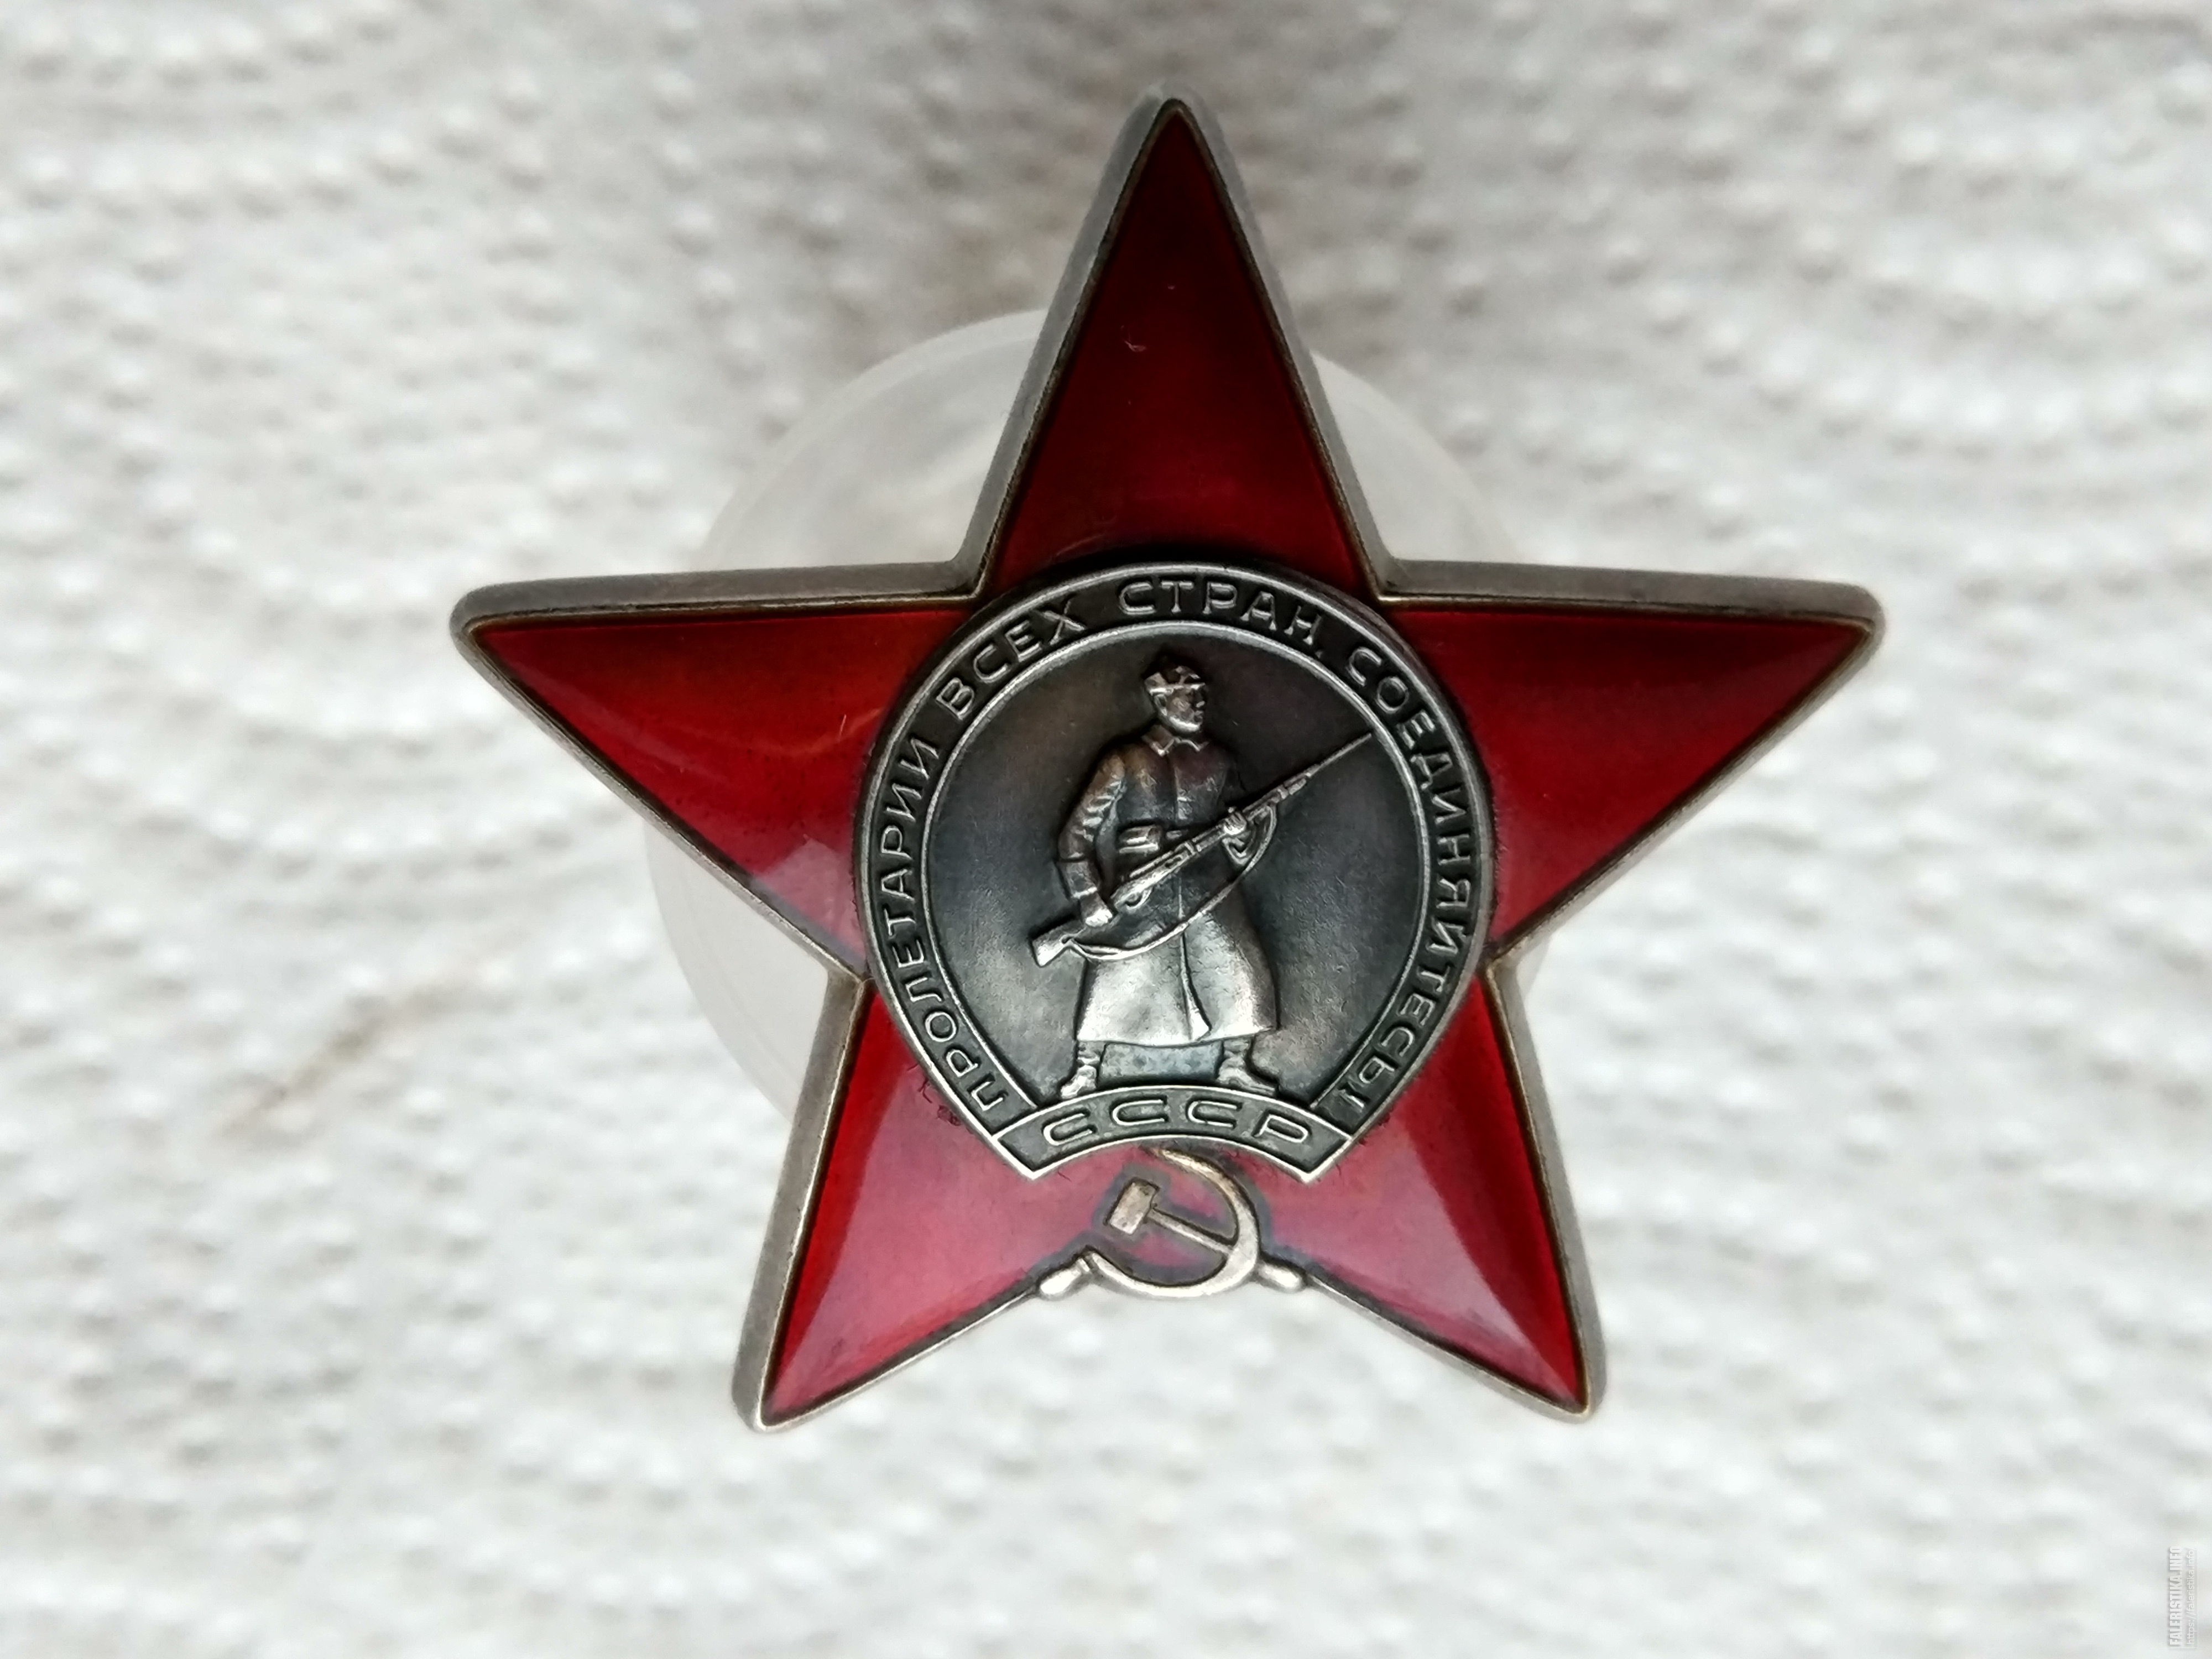 Планка ордена красной звезды фото